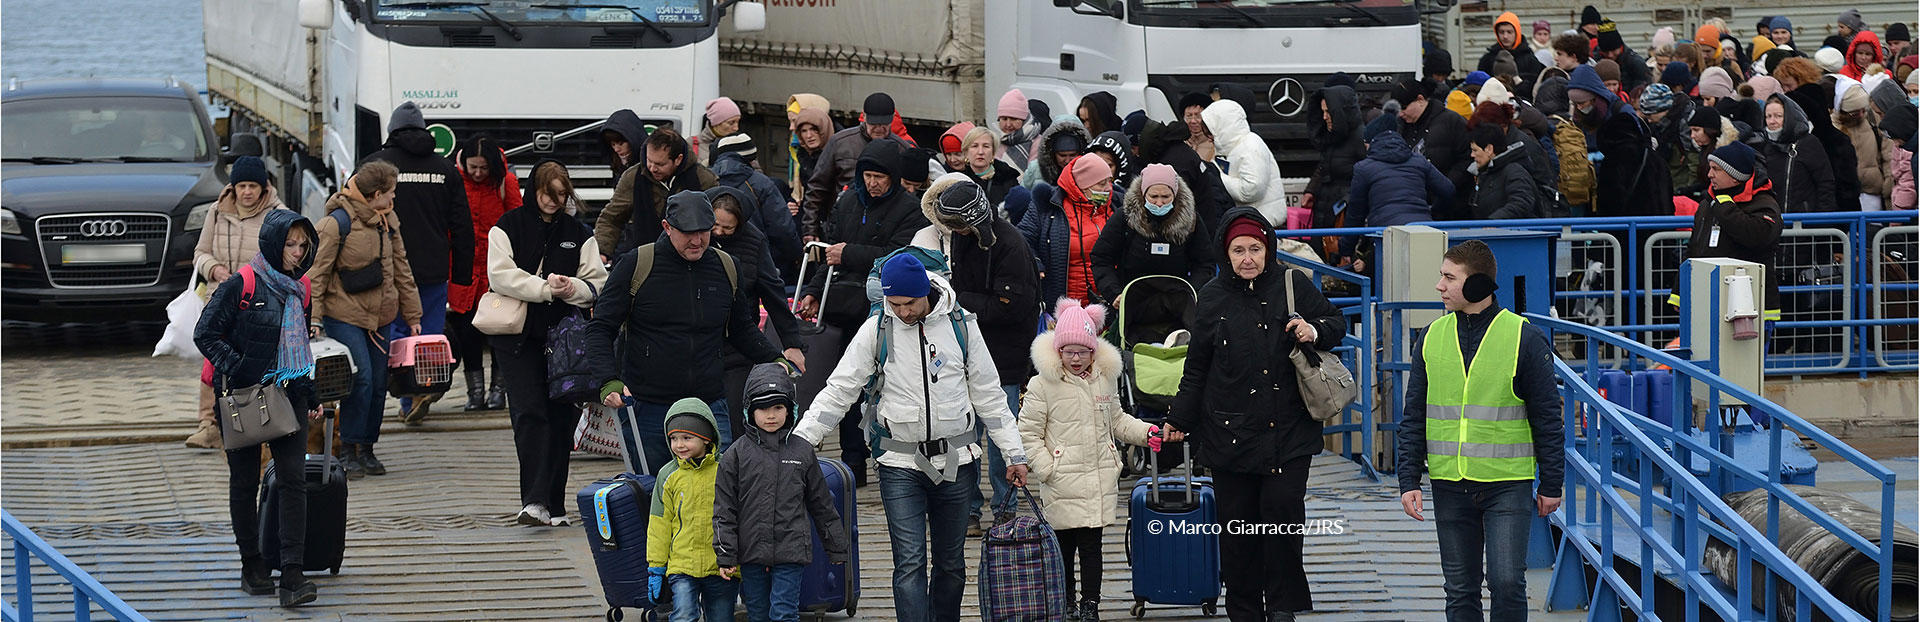 La Compagnie de Jésus a répondu à la crise humanitaire en Ukraine et dans les environs dès le premier jour